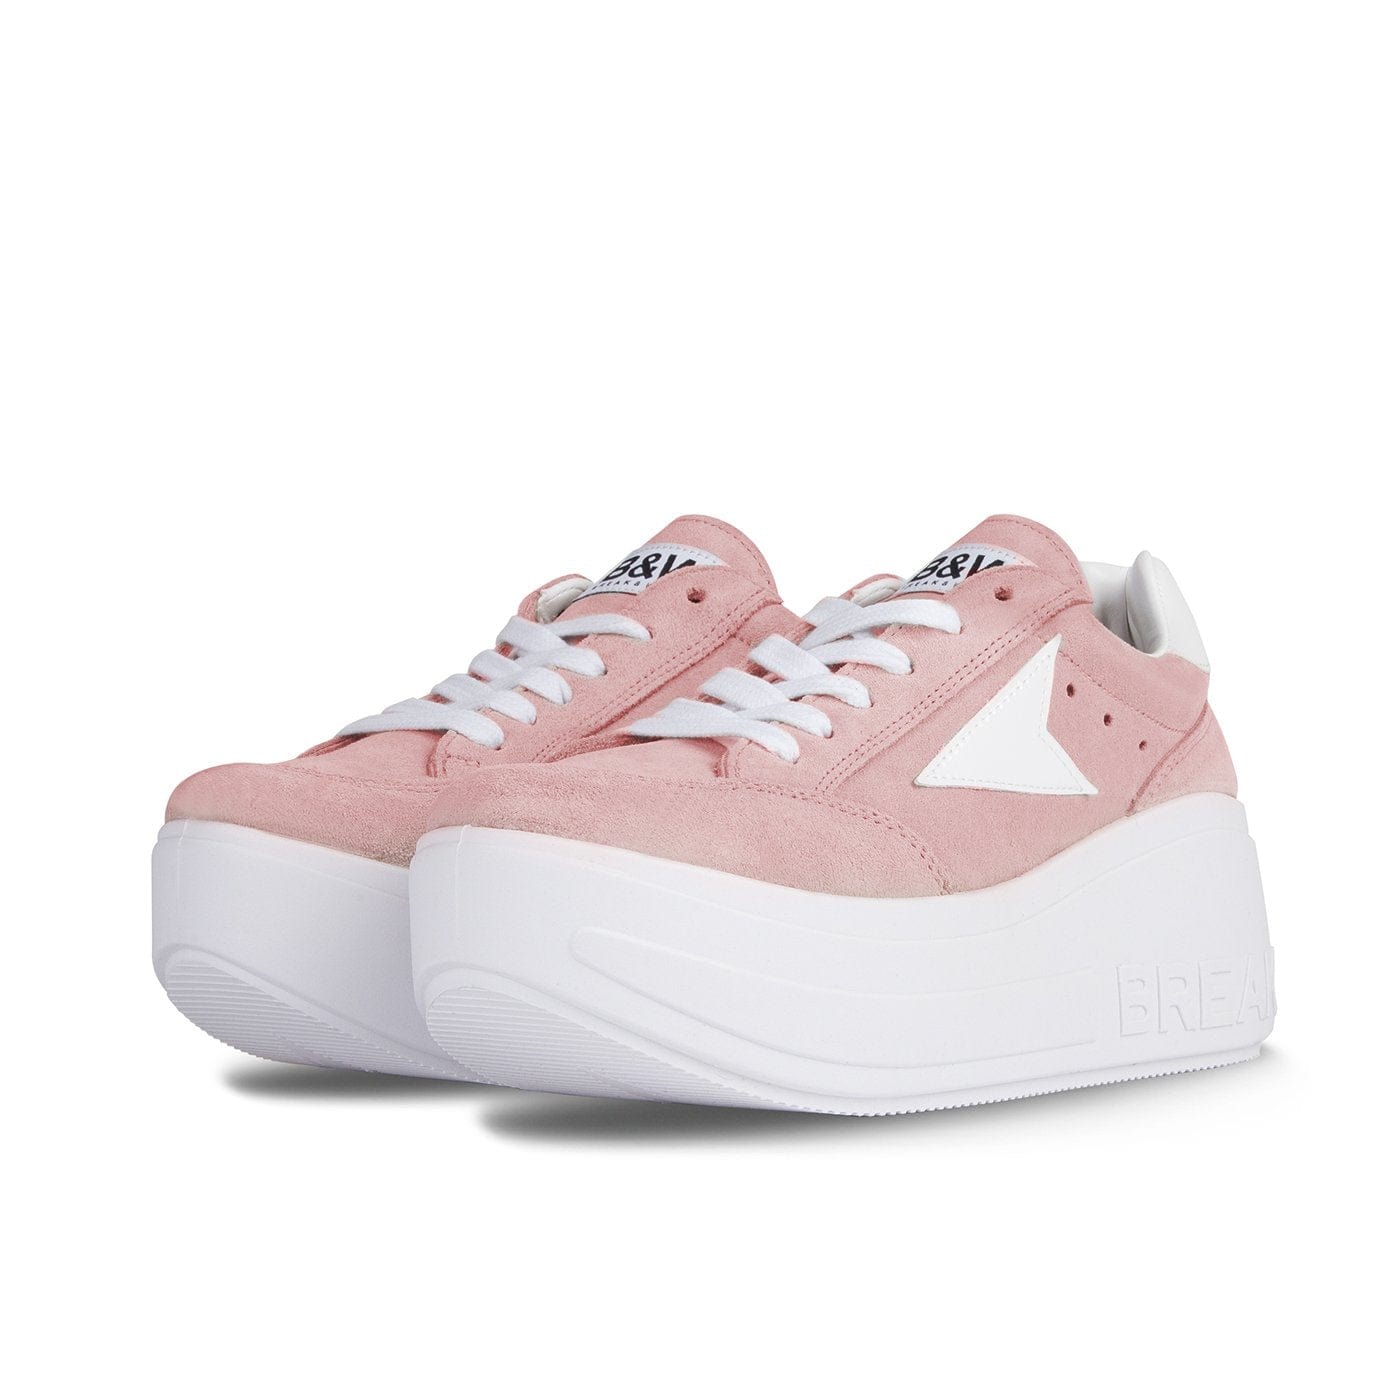 Sneakers Wicker Platform Pink Pale